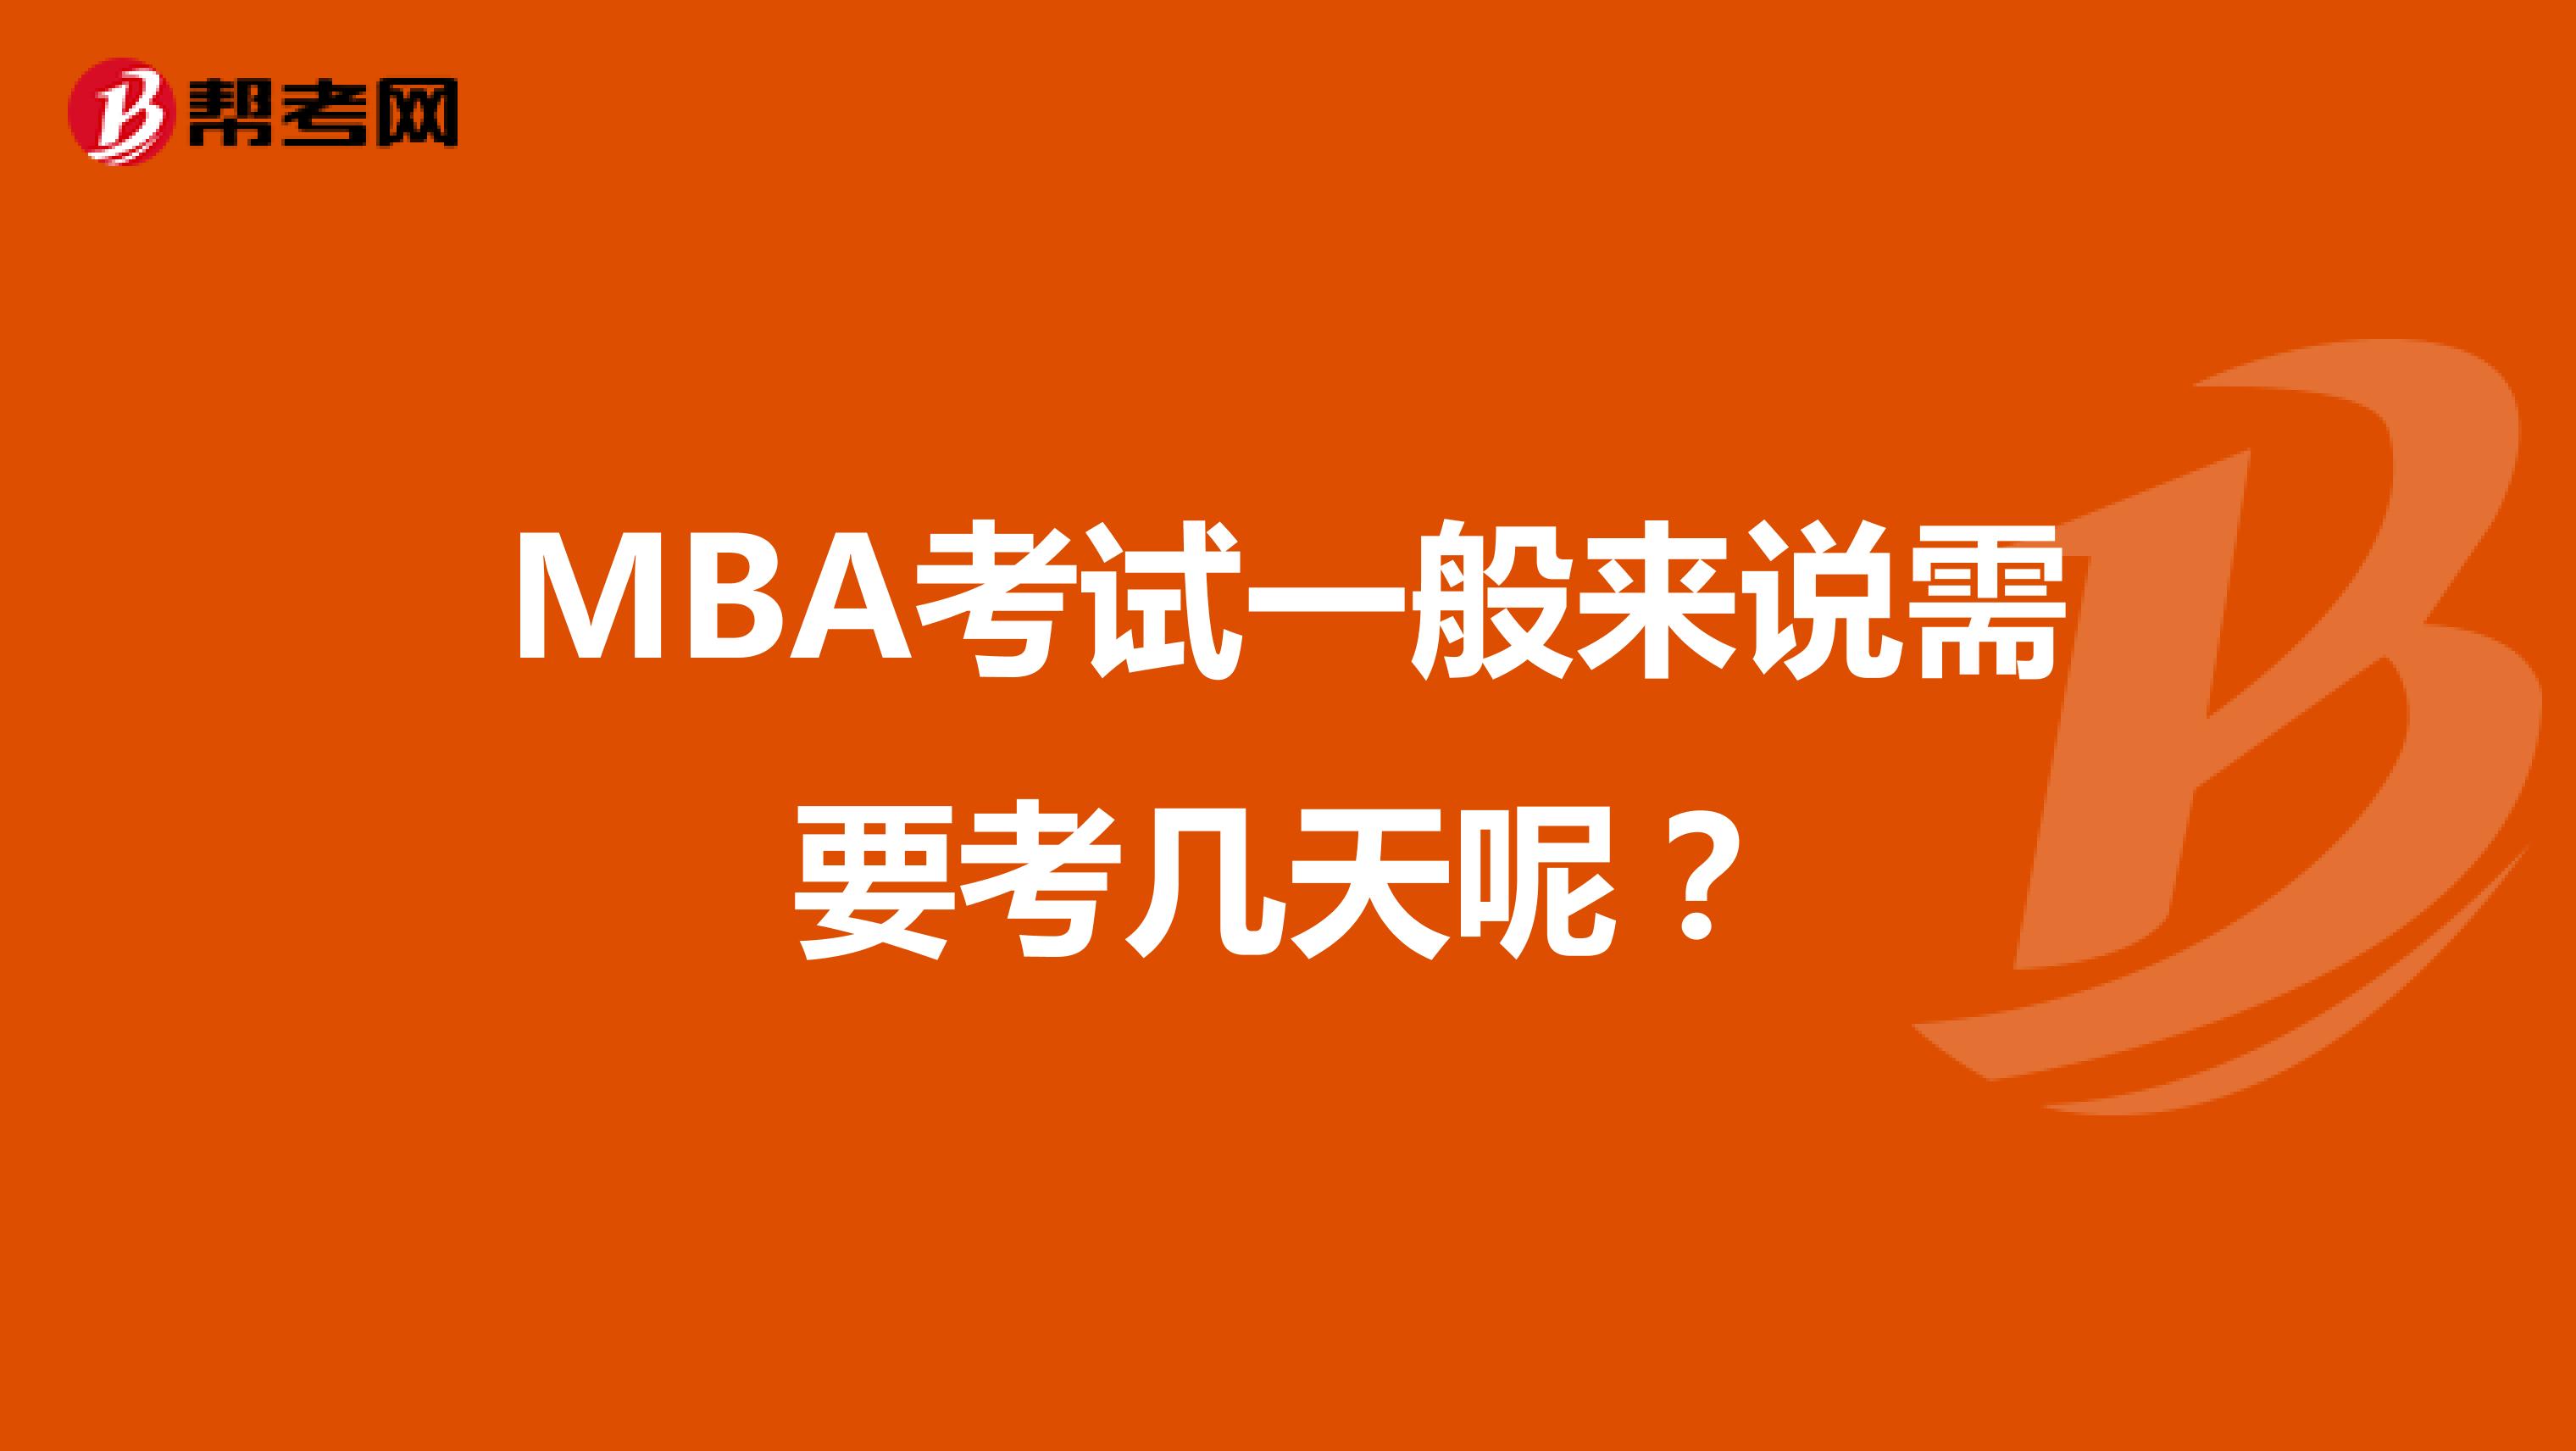 MBA考试一般来说需要考几天呢？